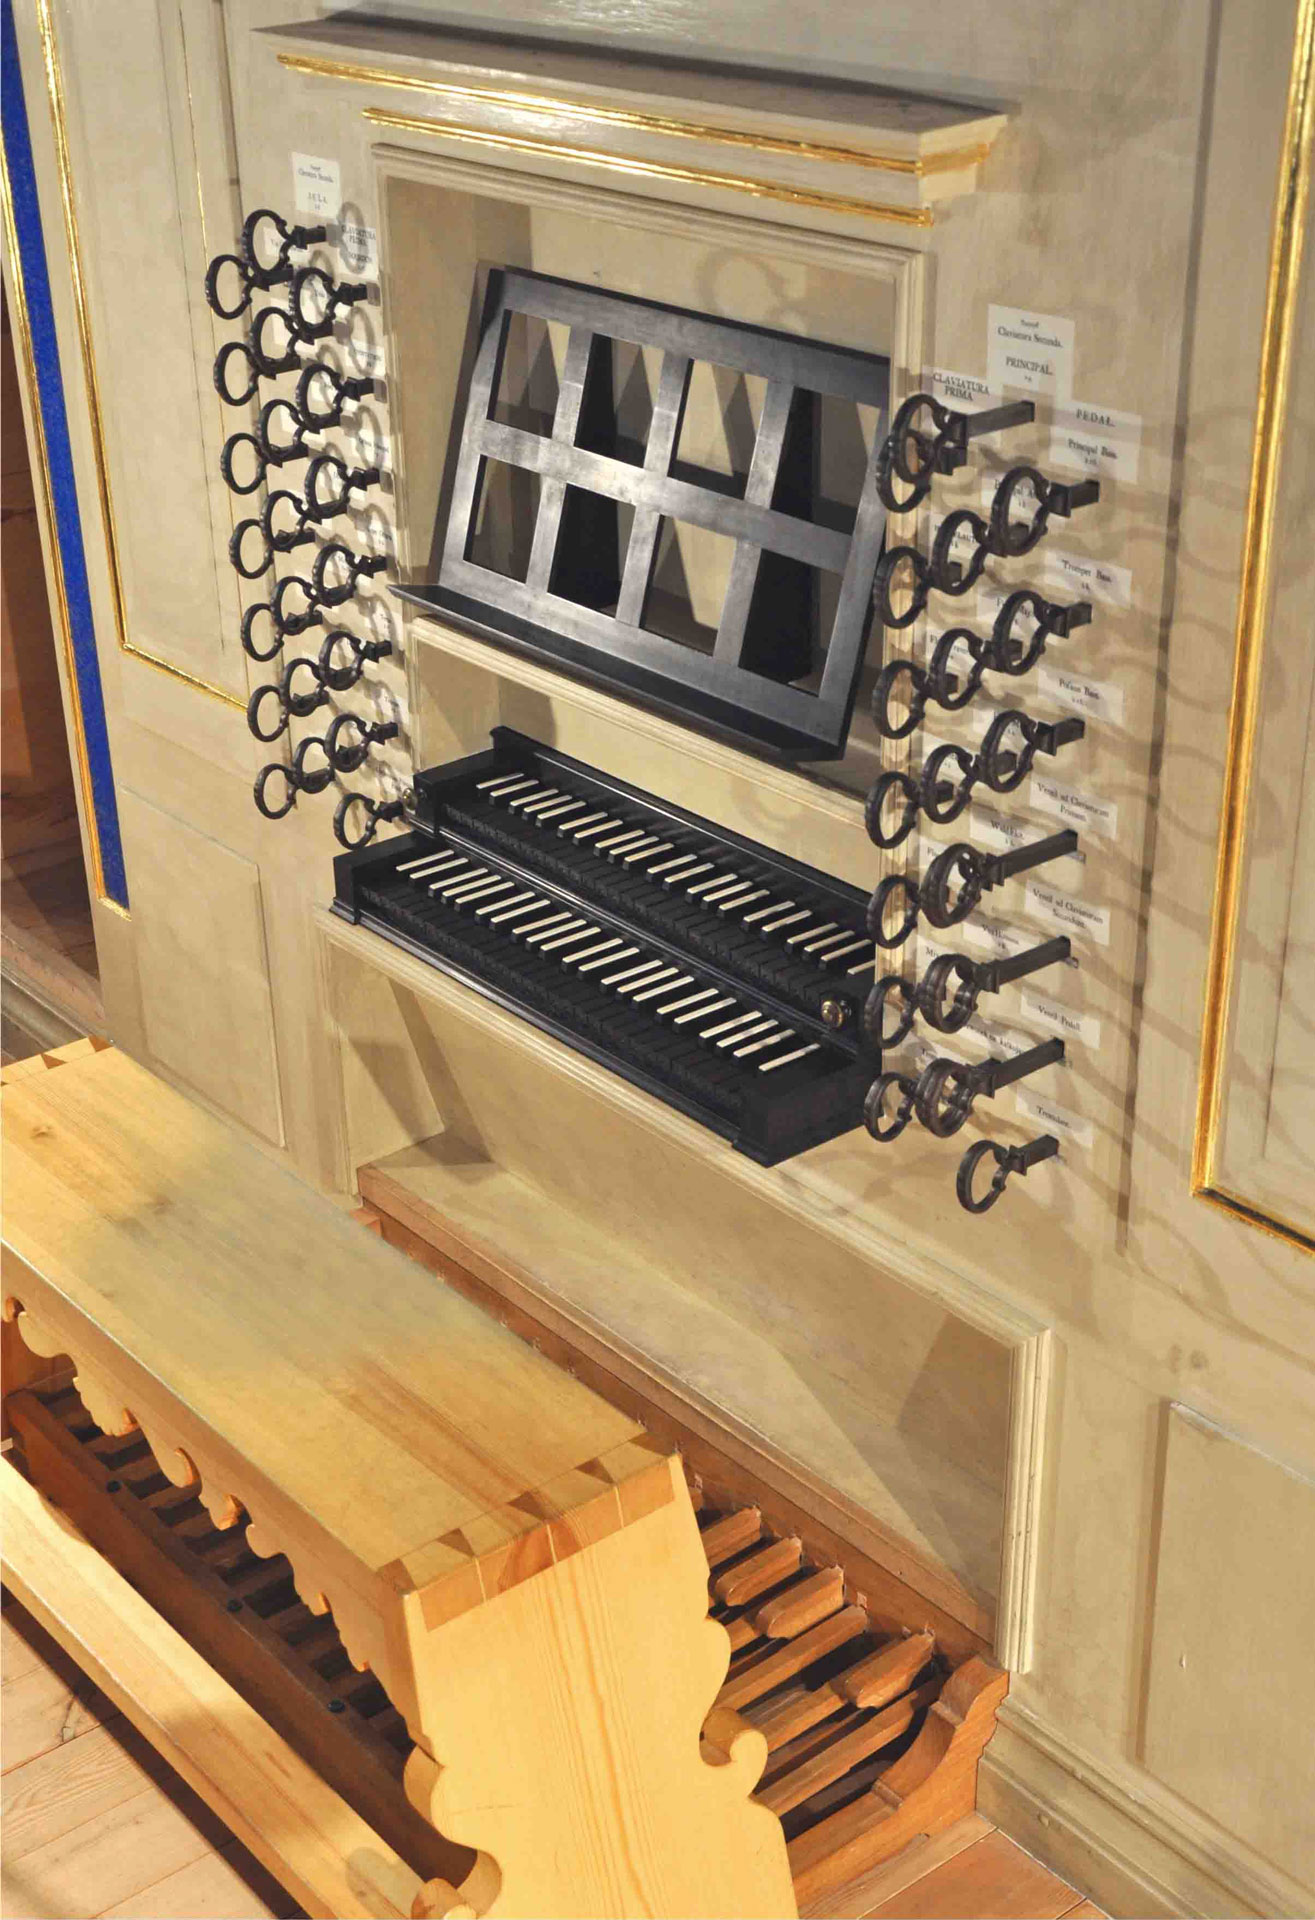 Craighead-Saunders Organ Keydesk